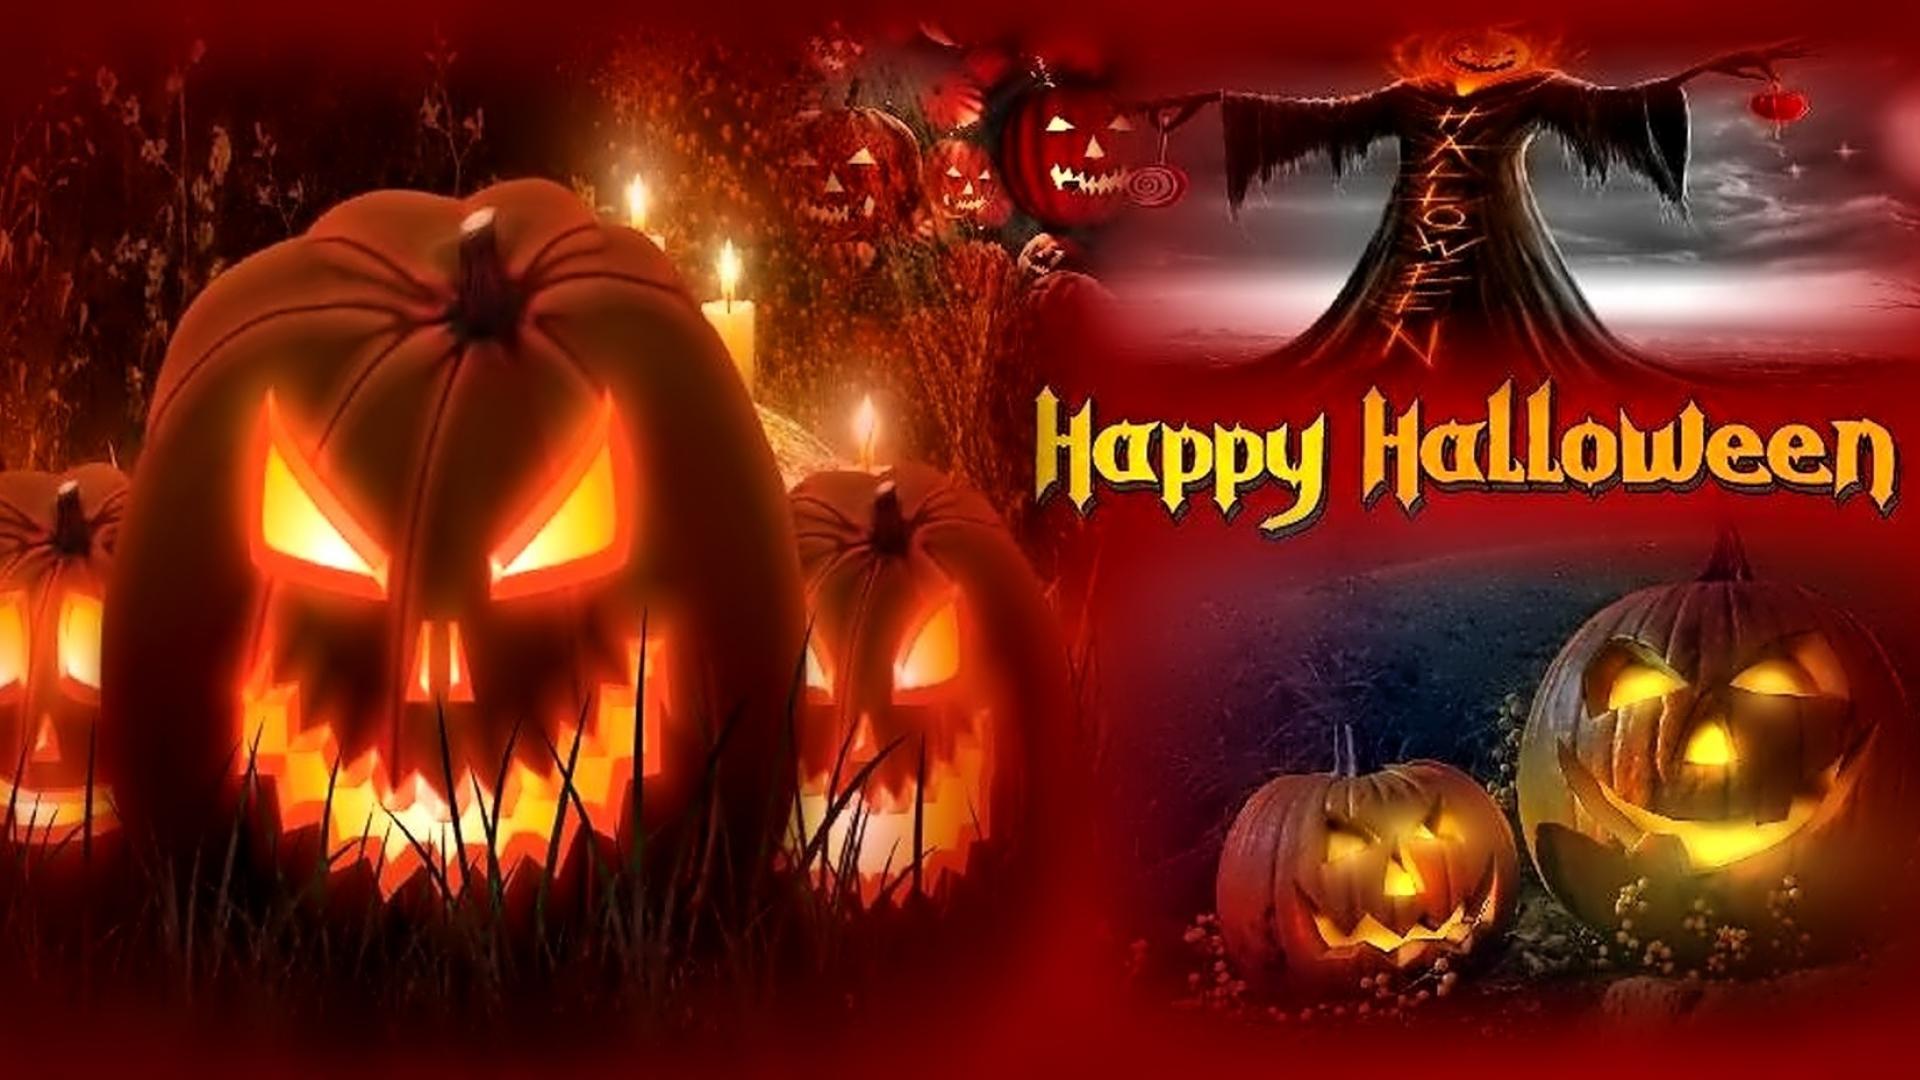 happy halloween wallpaper hd Happy halloween desktop wallpapers – MogMagz